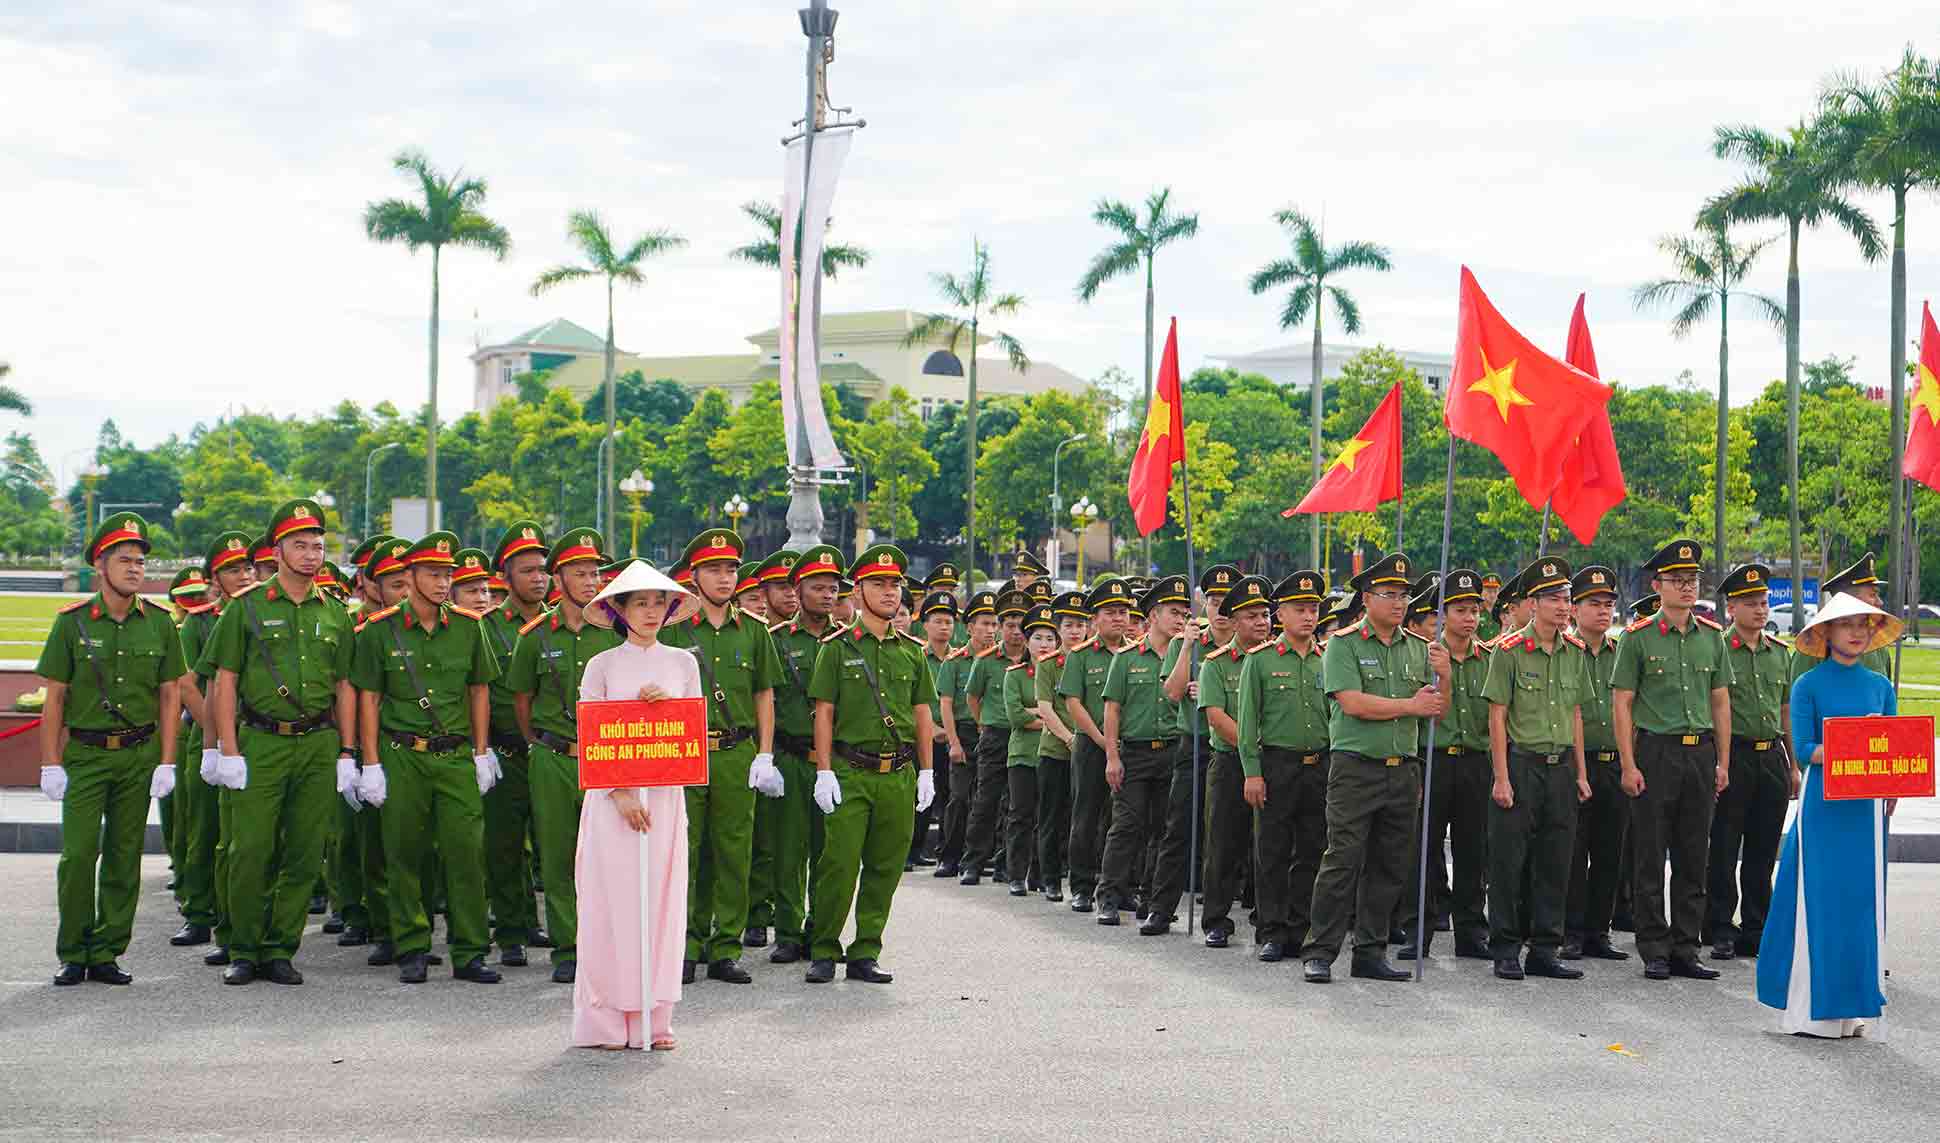 Các lực lượng bảo vệ an ninh trật tự ở cơ sở tham dự buổi lễ. Ảnh: Quang Đại.